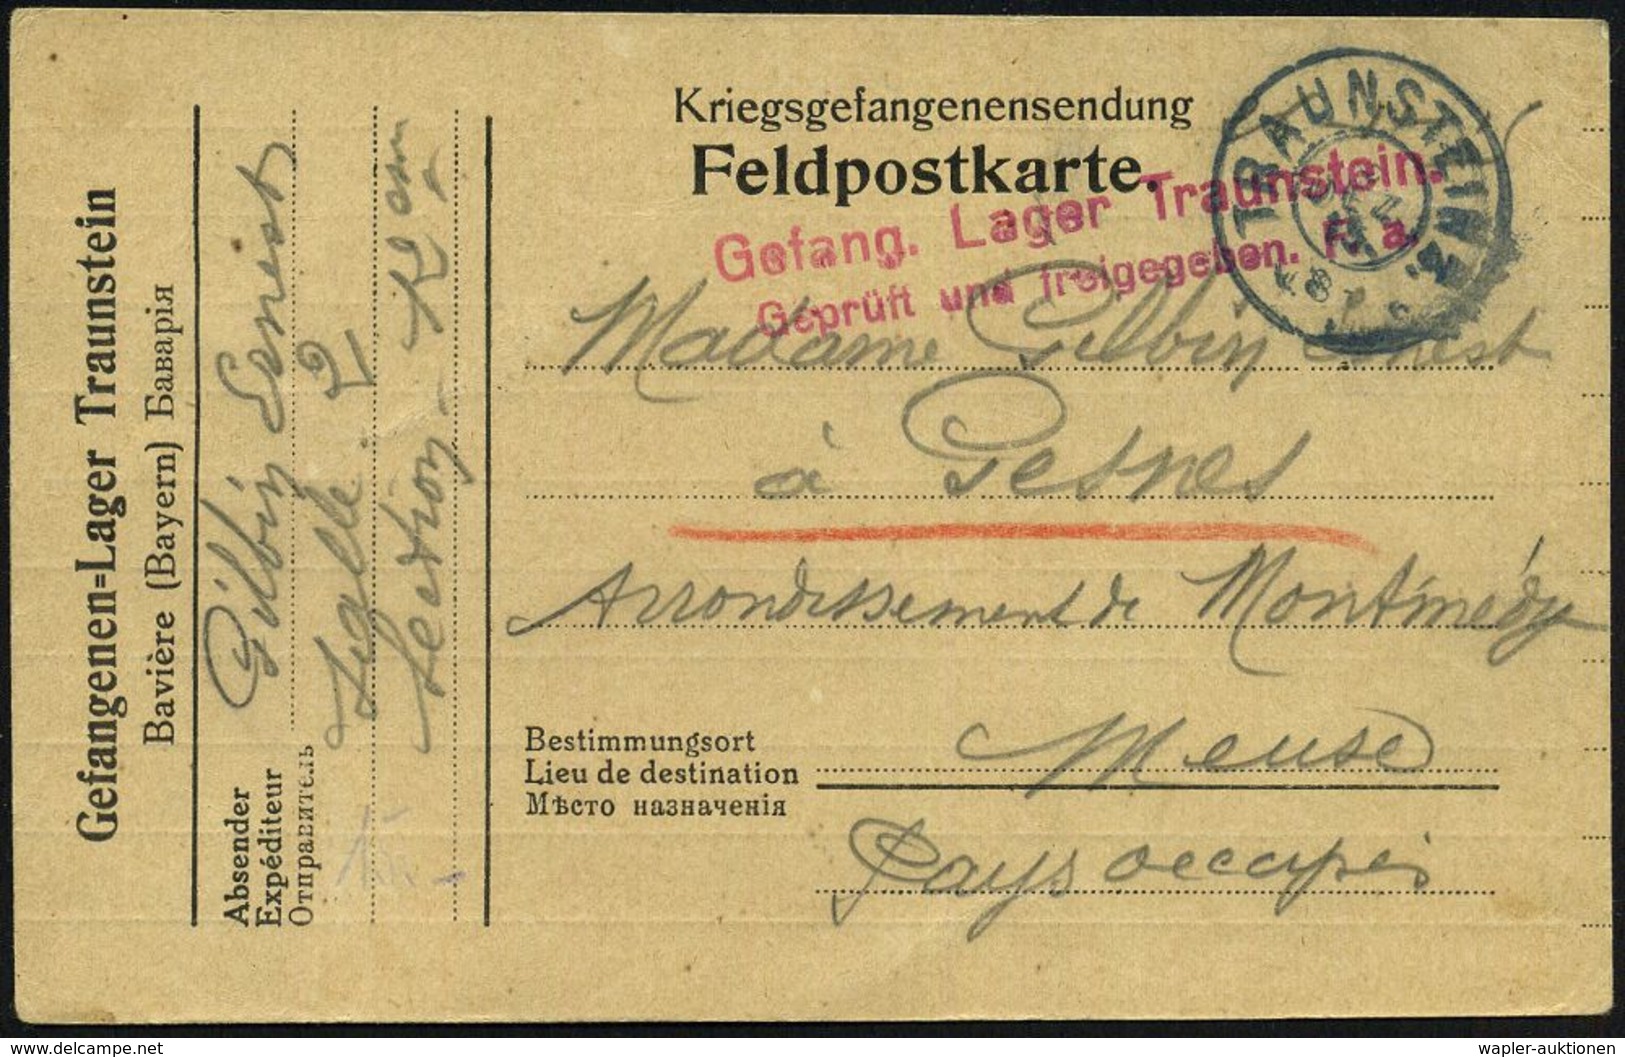 TRAUNSTEIN 2. 1915 (6.12.) Bayer. 2K + Rotviol. Seltener Zensur-2L: Gefang. Lager Traunstein/ Geprüft U. Freigegeben. F. - Cruz Roja